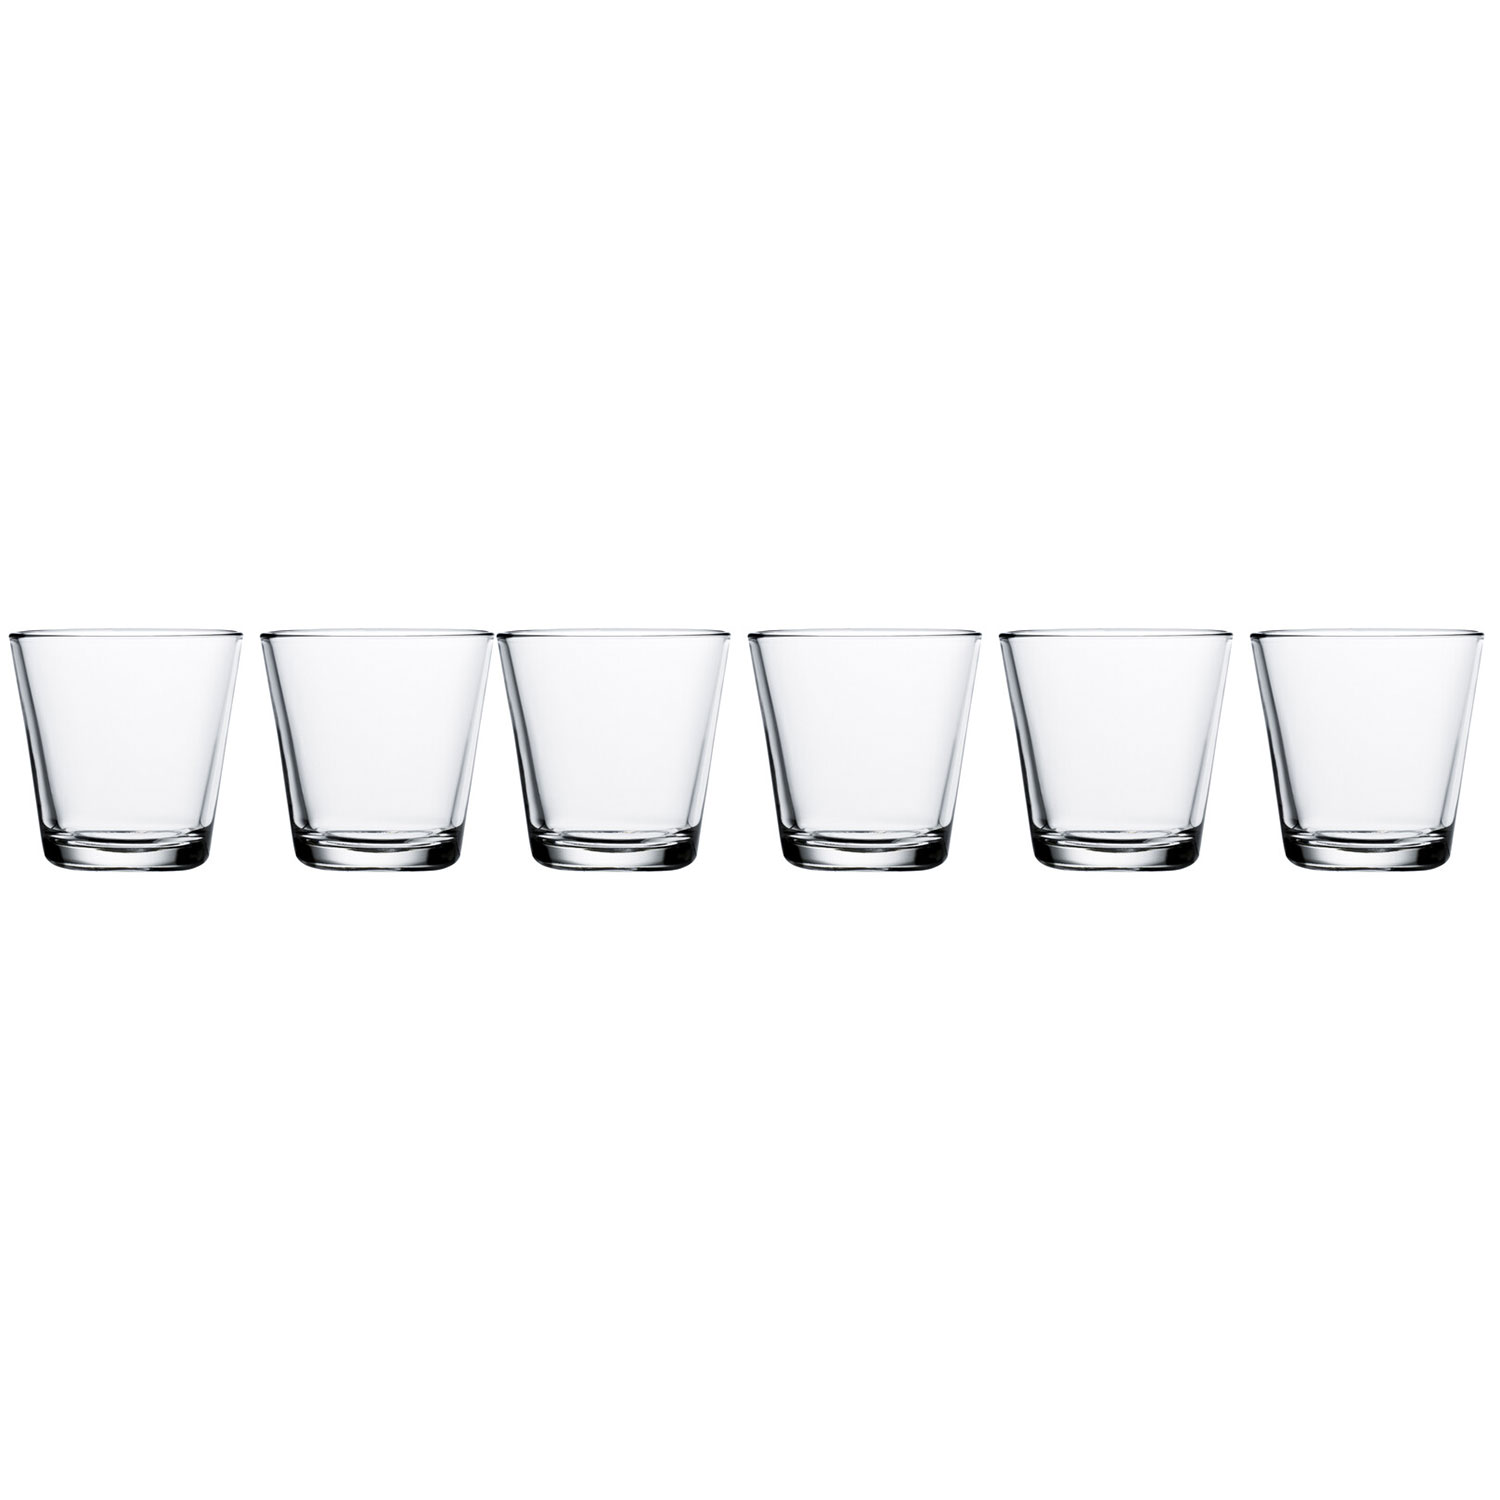 https://api-prod.royaldesign.se/api/products/image/2/iittala-kartio-drinking-glasses-6-pack-21-cl-0